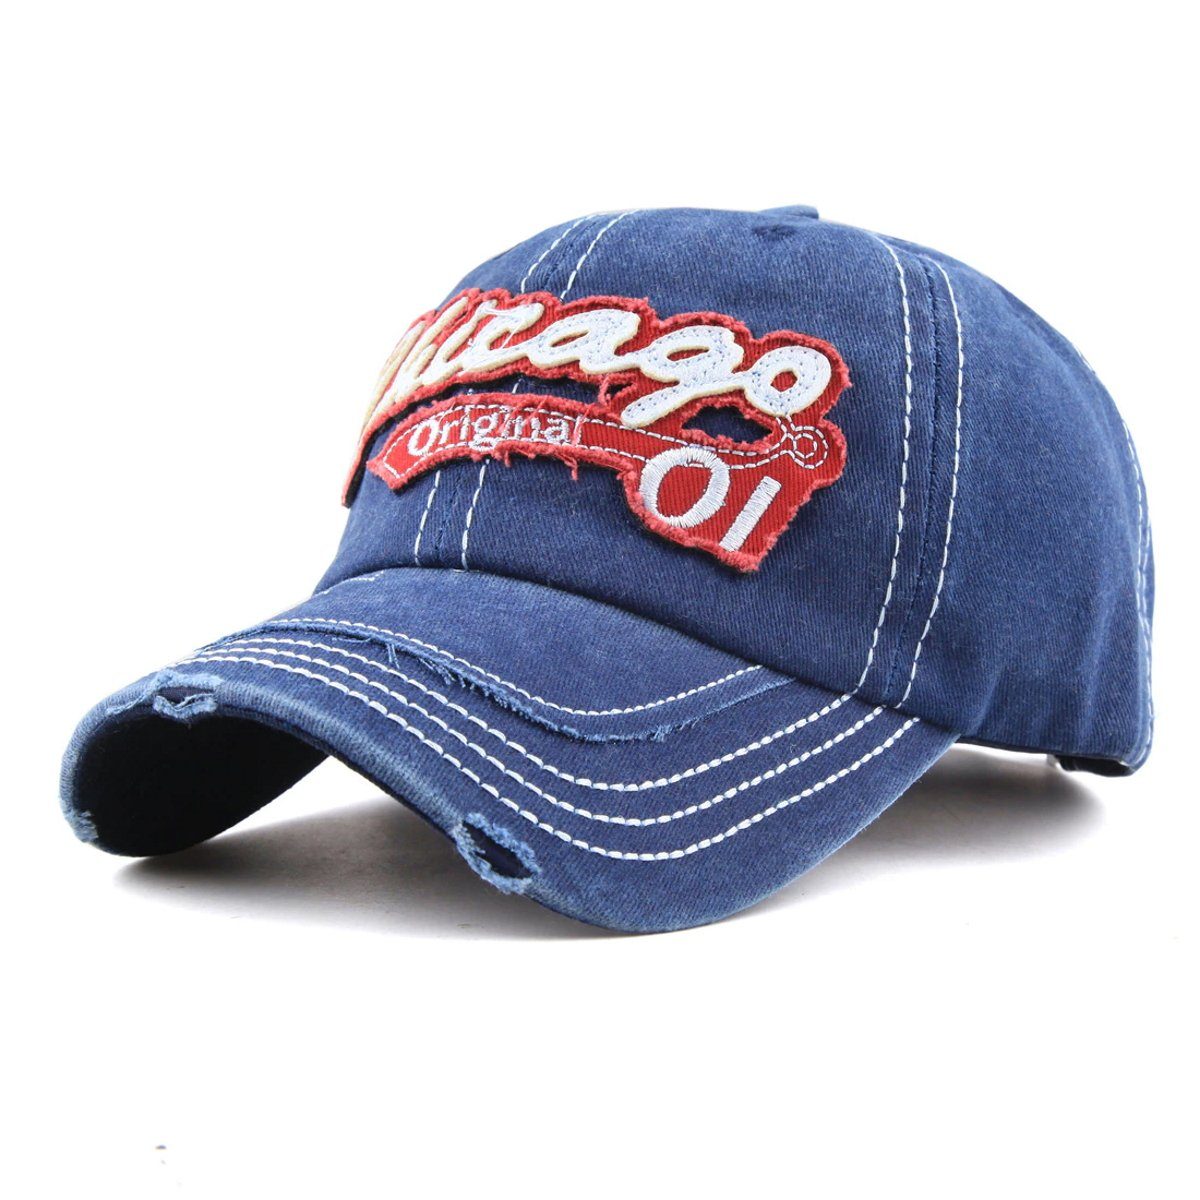 Sporty Cap Style Used Look Navy Washed Vintage Original Baseballcap Baseball Chicago Retro